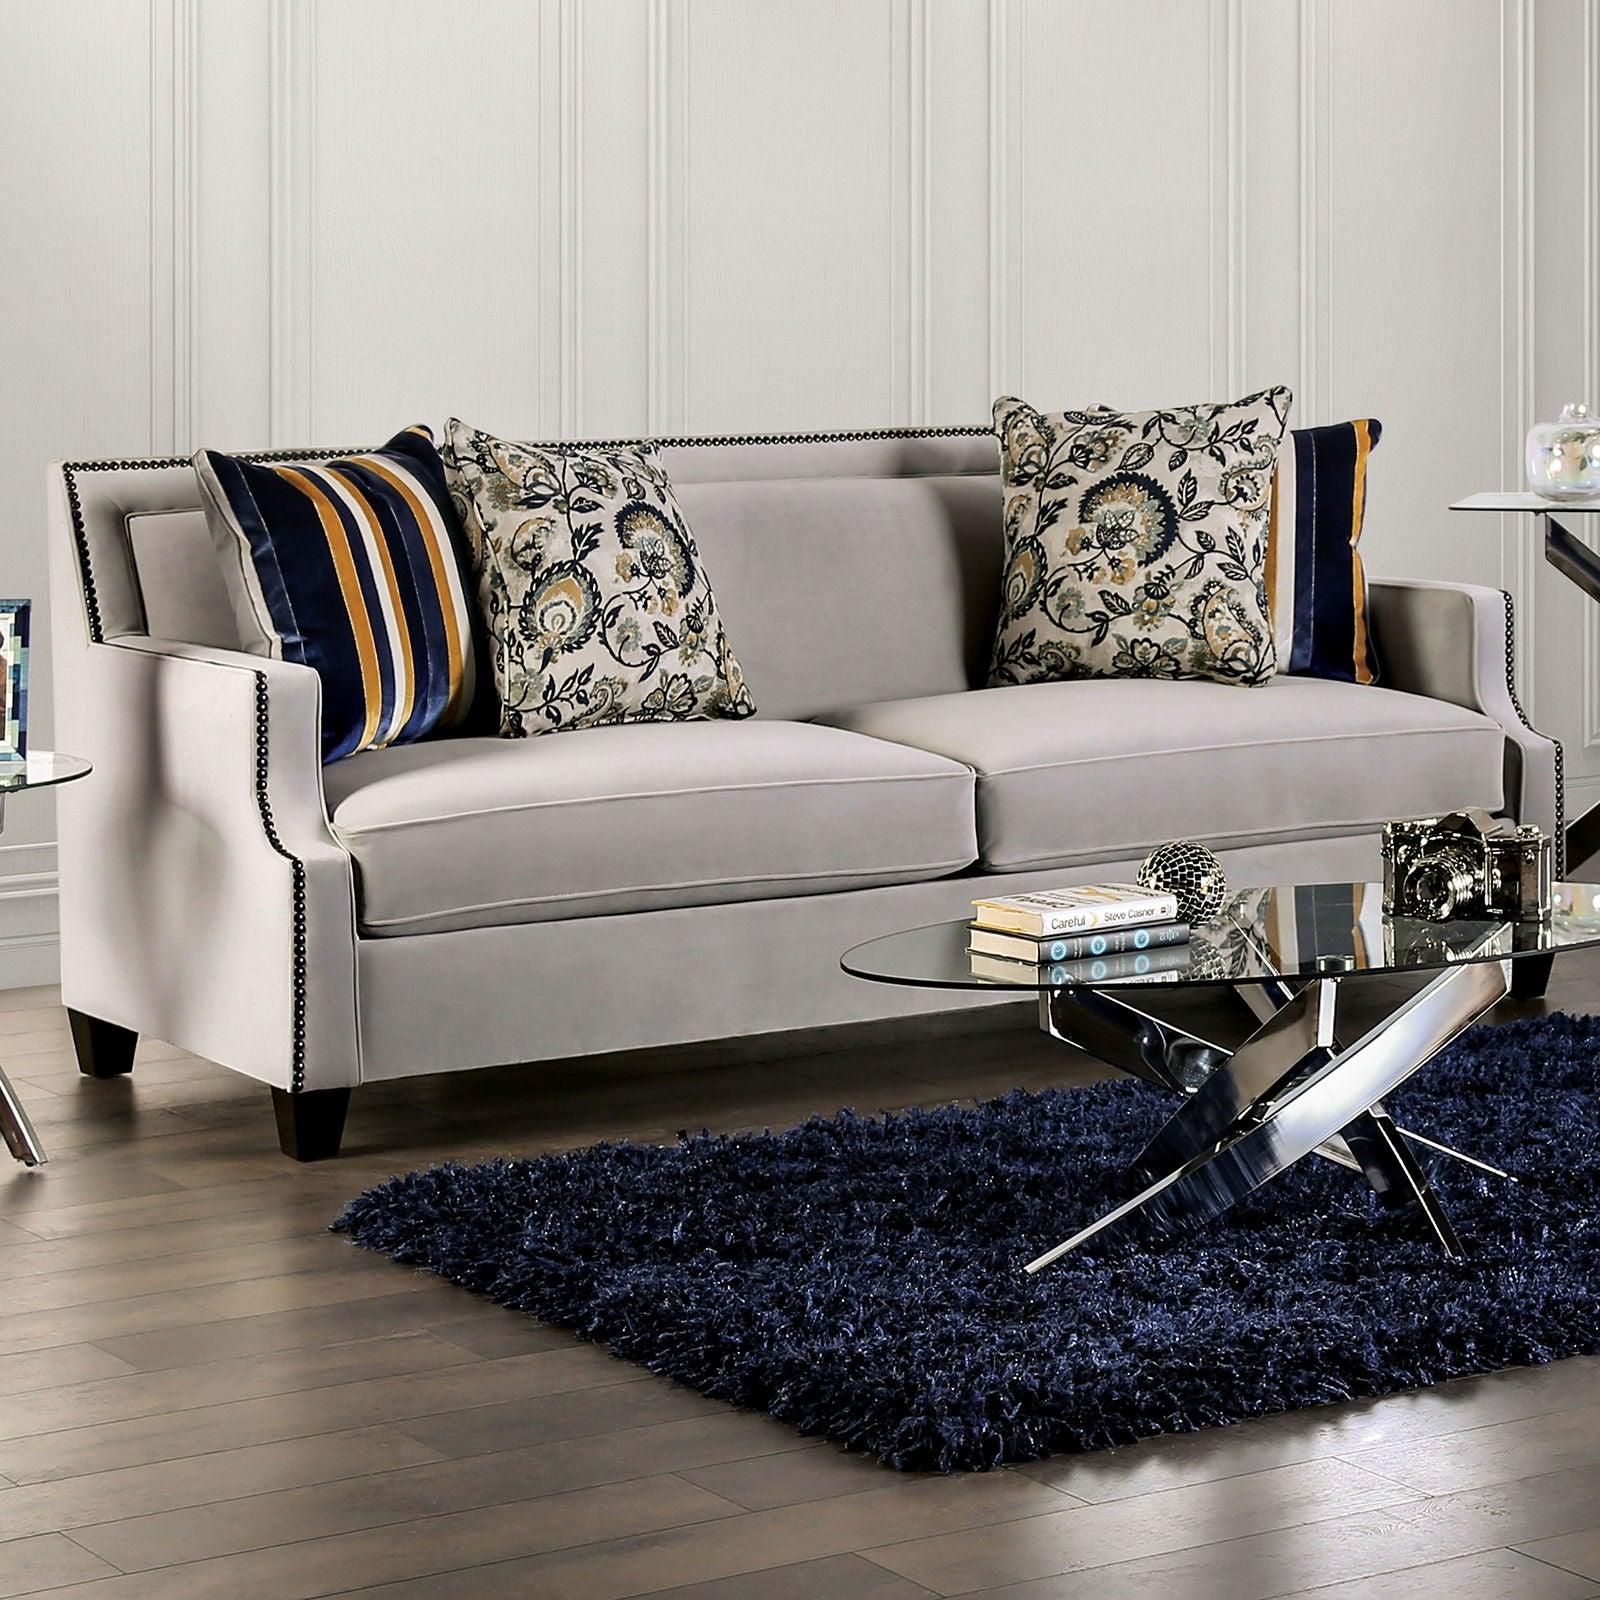 Furniture of America - Montecelio - Sofa - 5th Avenue Furniture